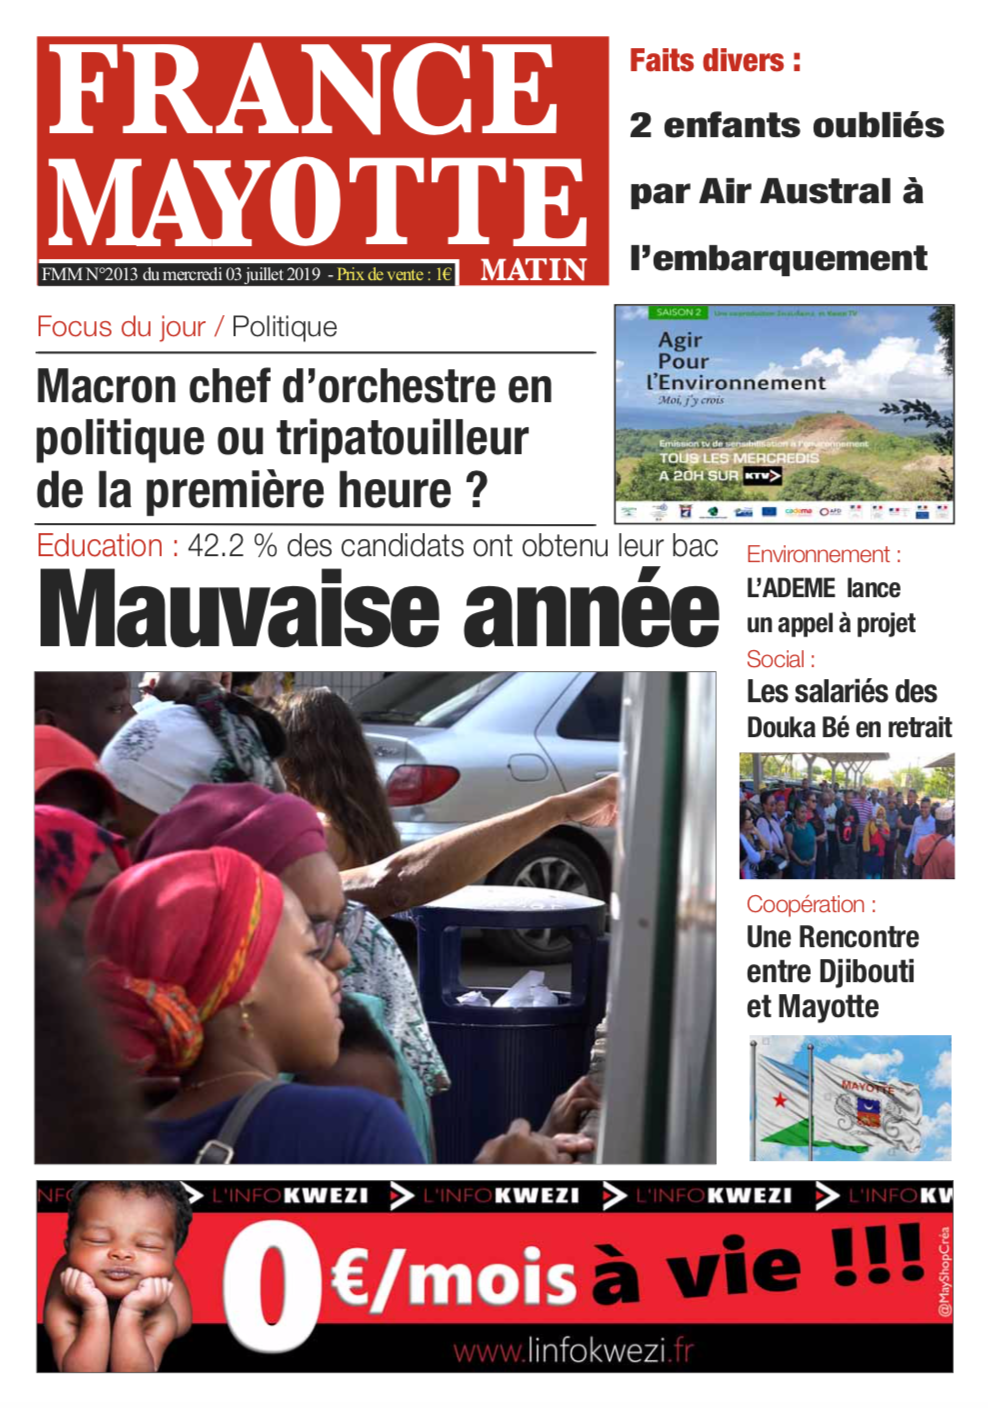 France Mayotte Mercredi 3 juillet 2019